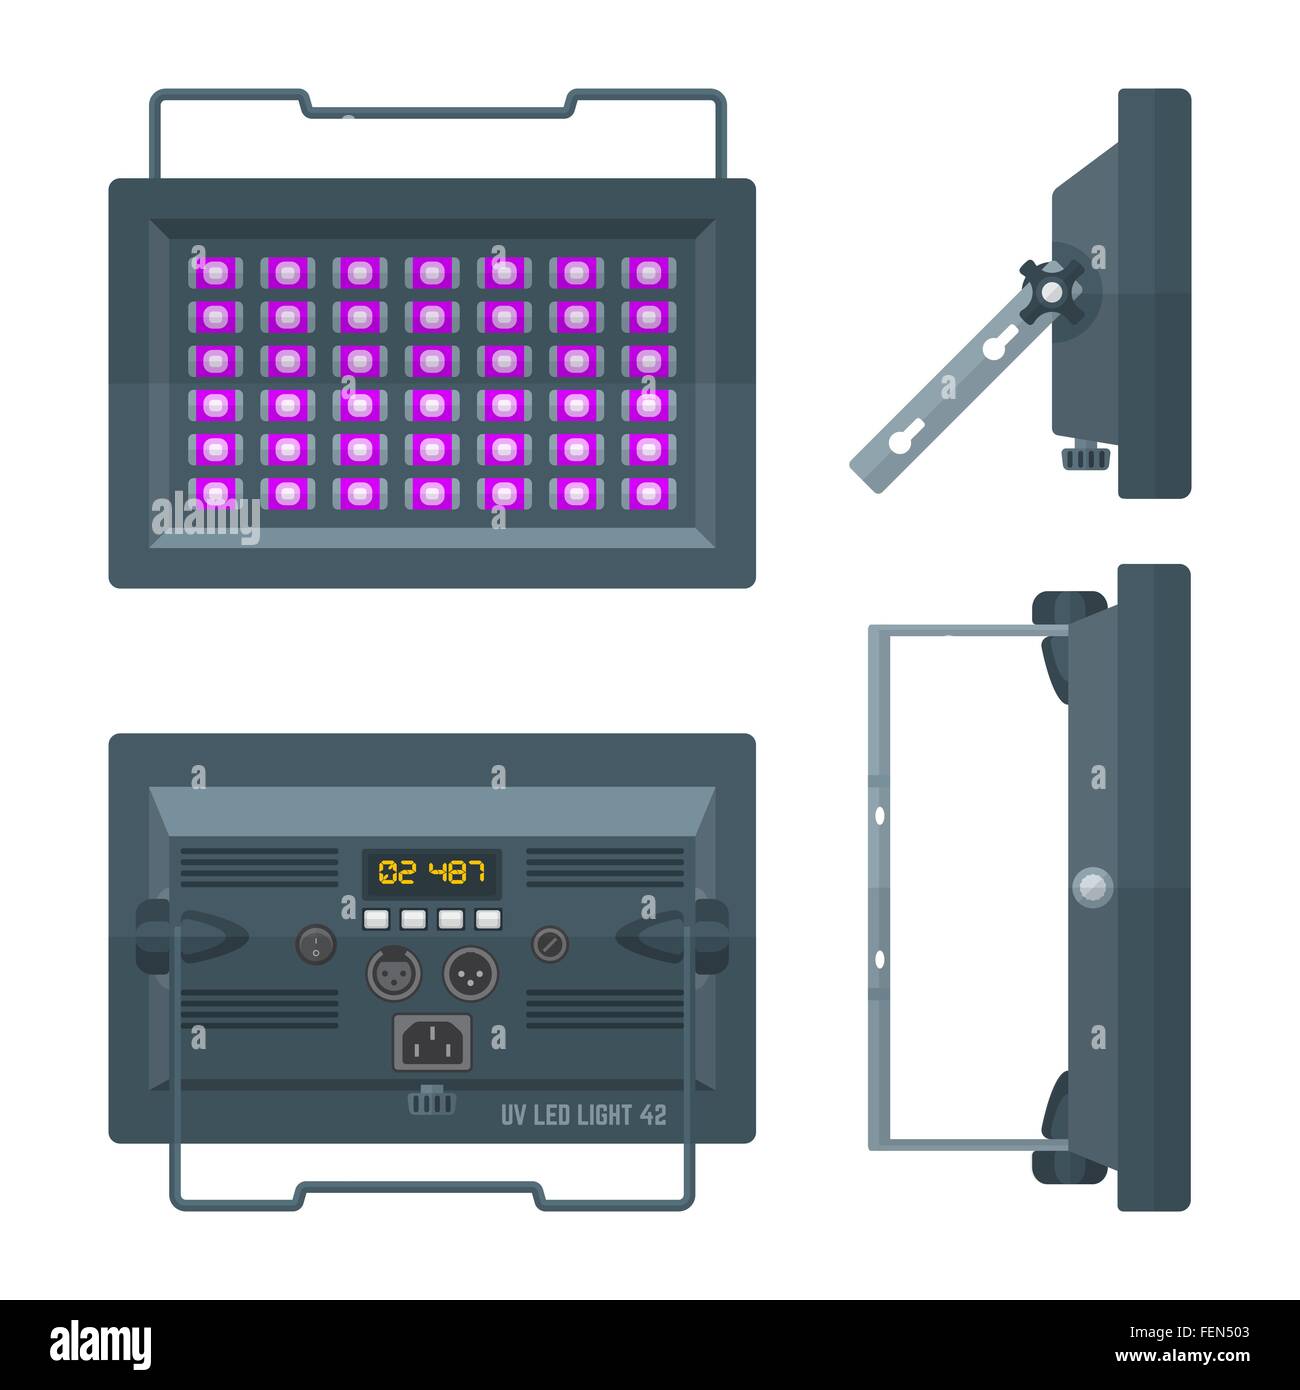 LED UV Blacklight professionelle Bühnen Projektor Beleuchtung farbige flache Illustration weißen Hintergrund Stock Vektor